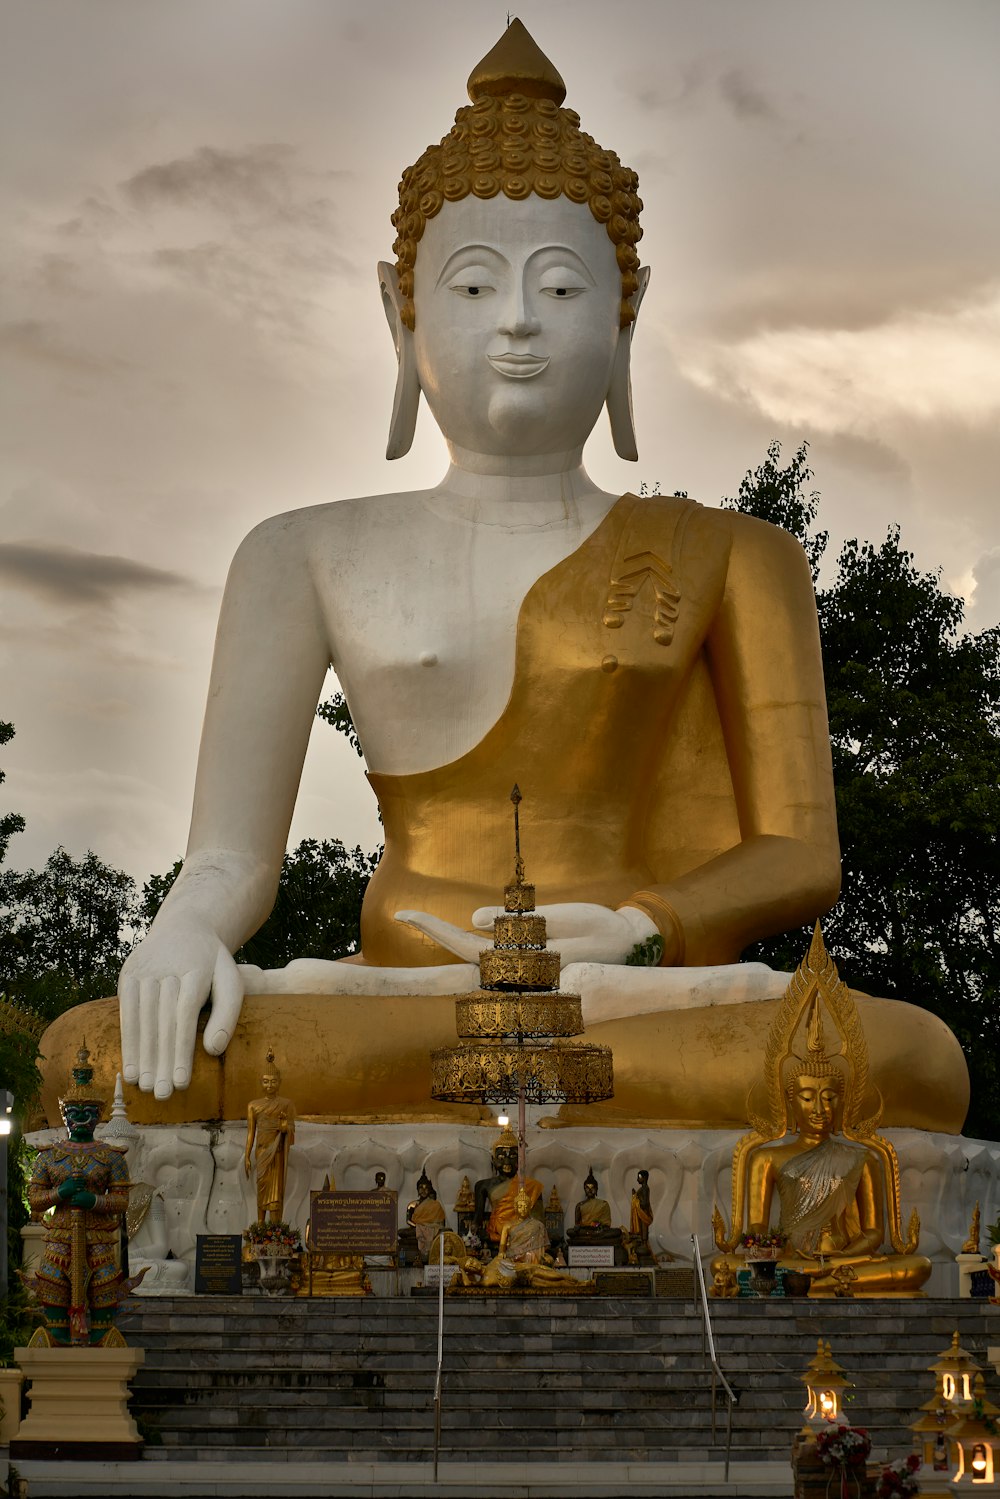 Una gran estatua dorada de Buda sentada en un parque